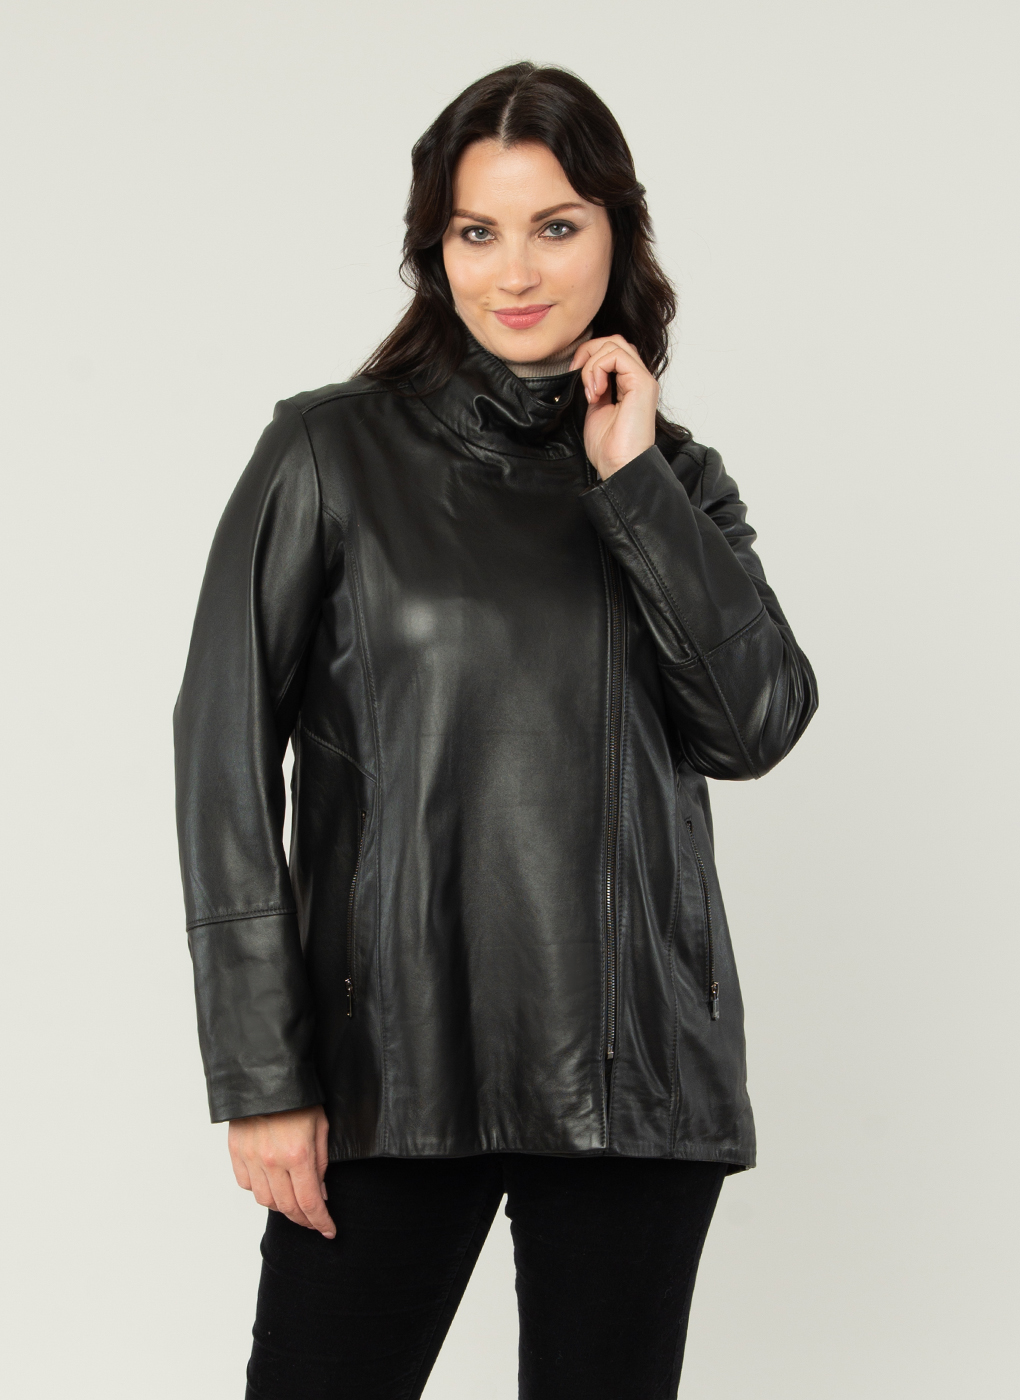 Кожаная куртка женская Каляев 54001 черная 48 RU